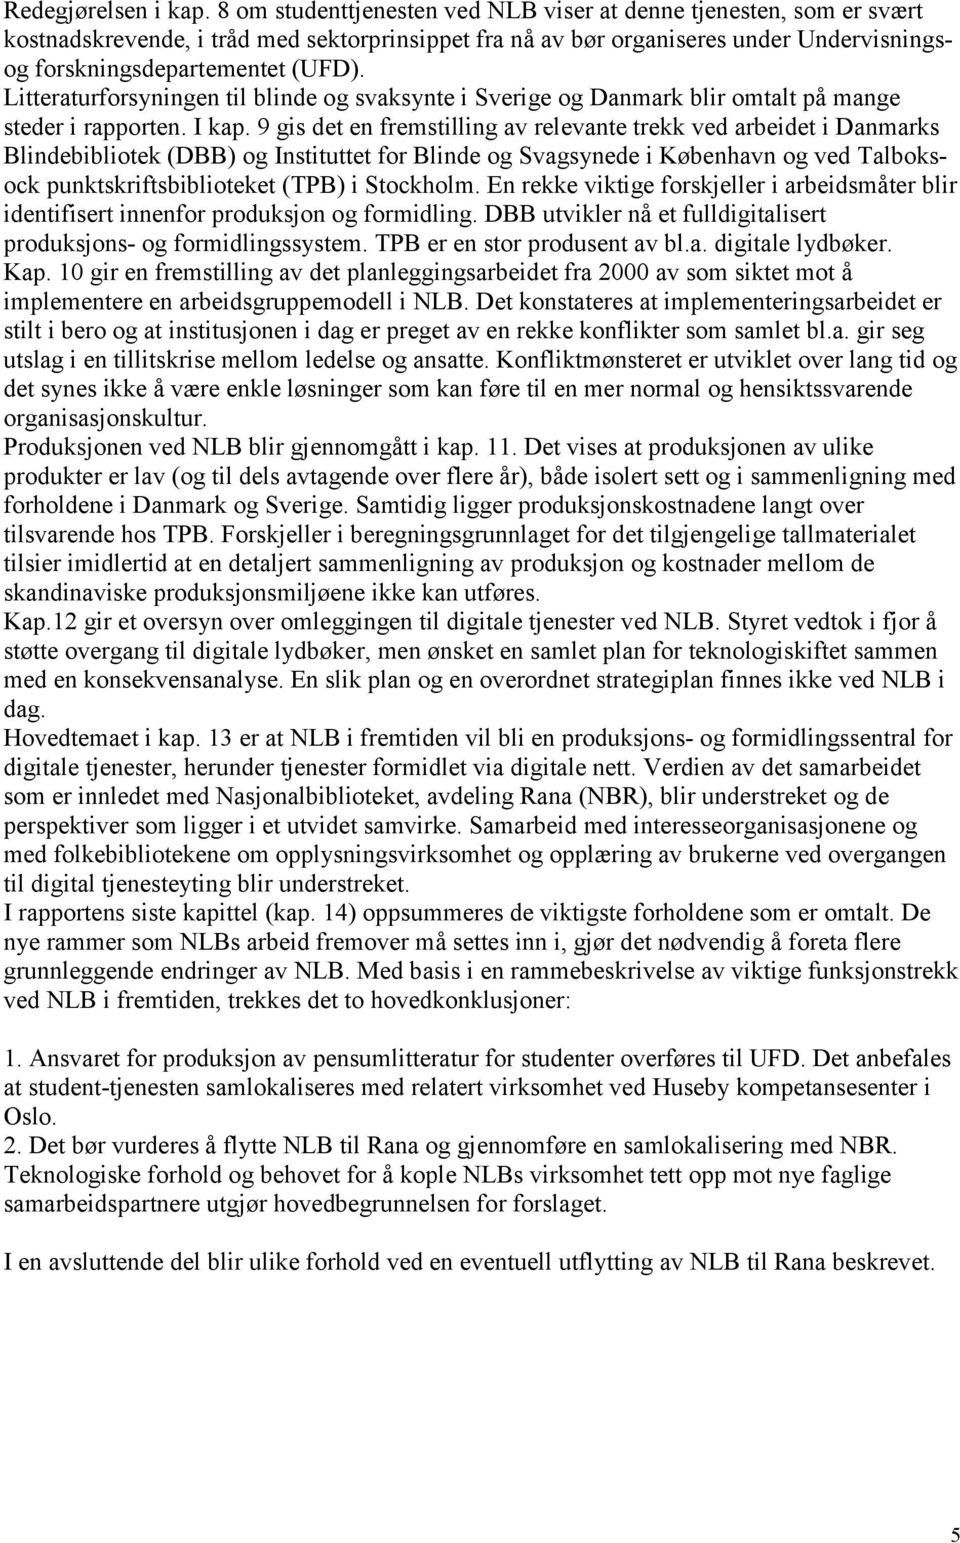 Litteraturforsyningen til blinde og svaksynte i Sverige og Danmark blir omtalt på mange steder i rapporten. I kap.